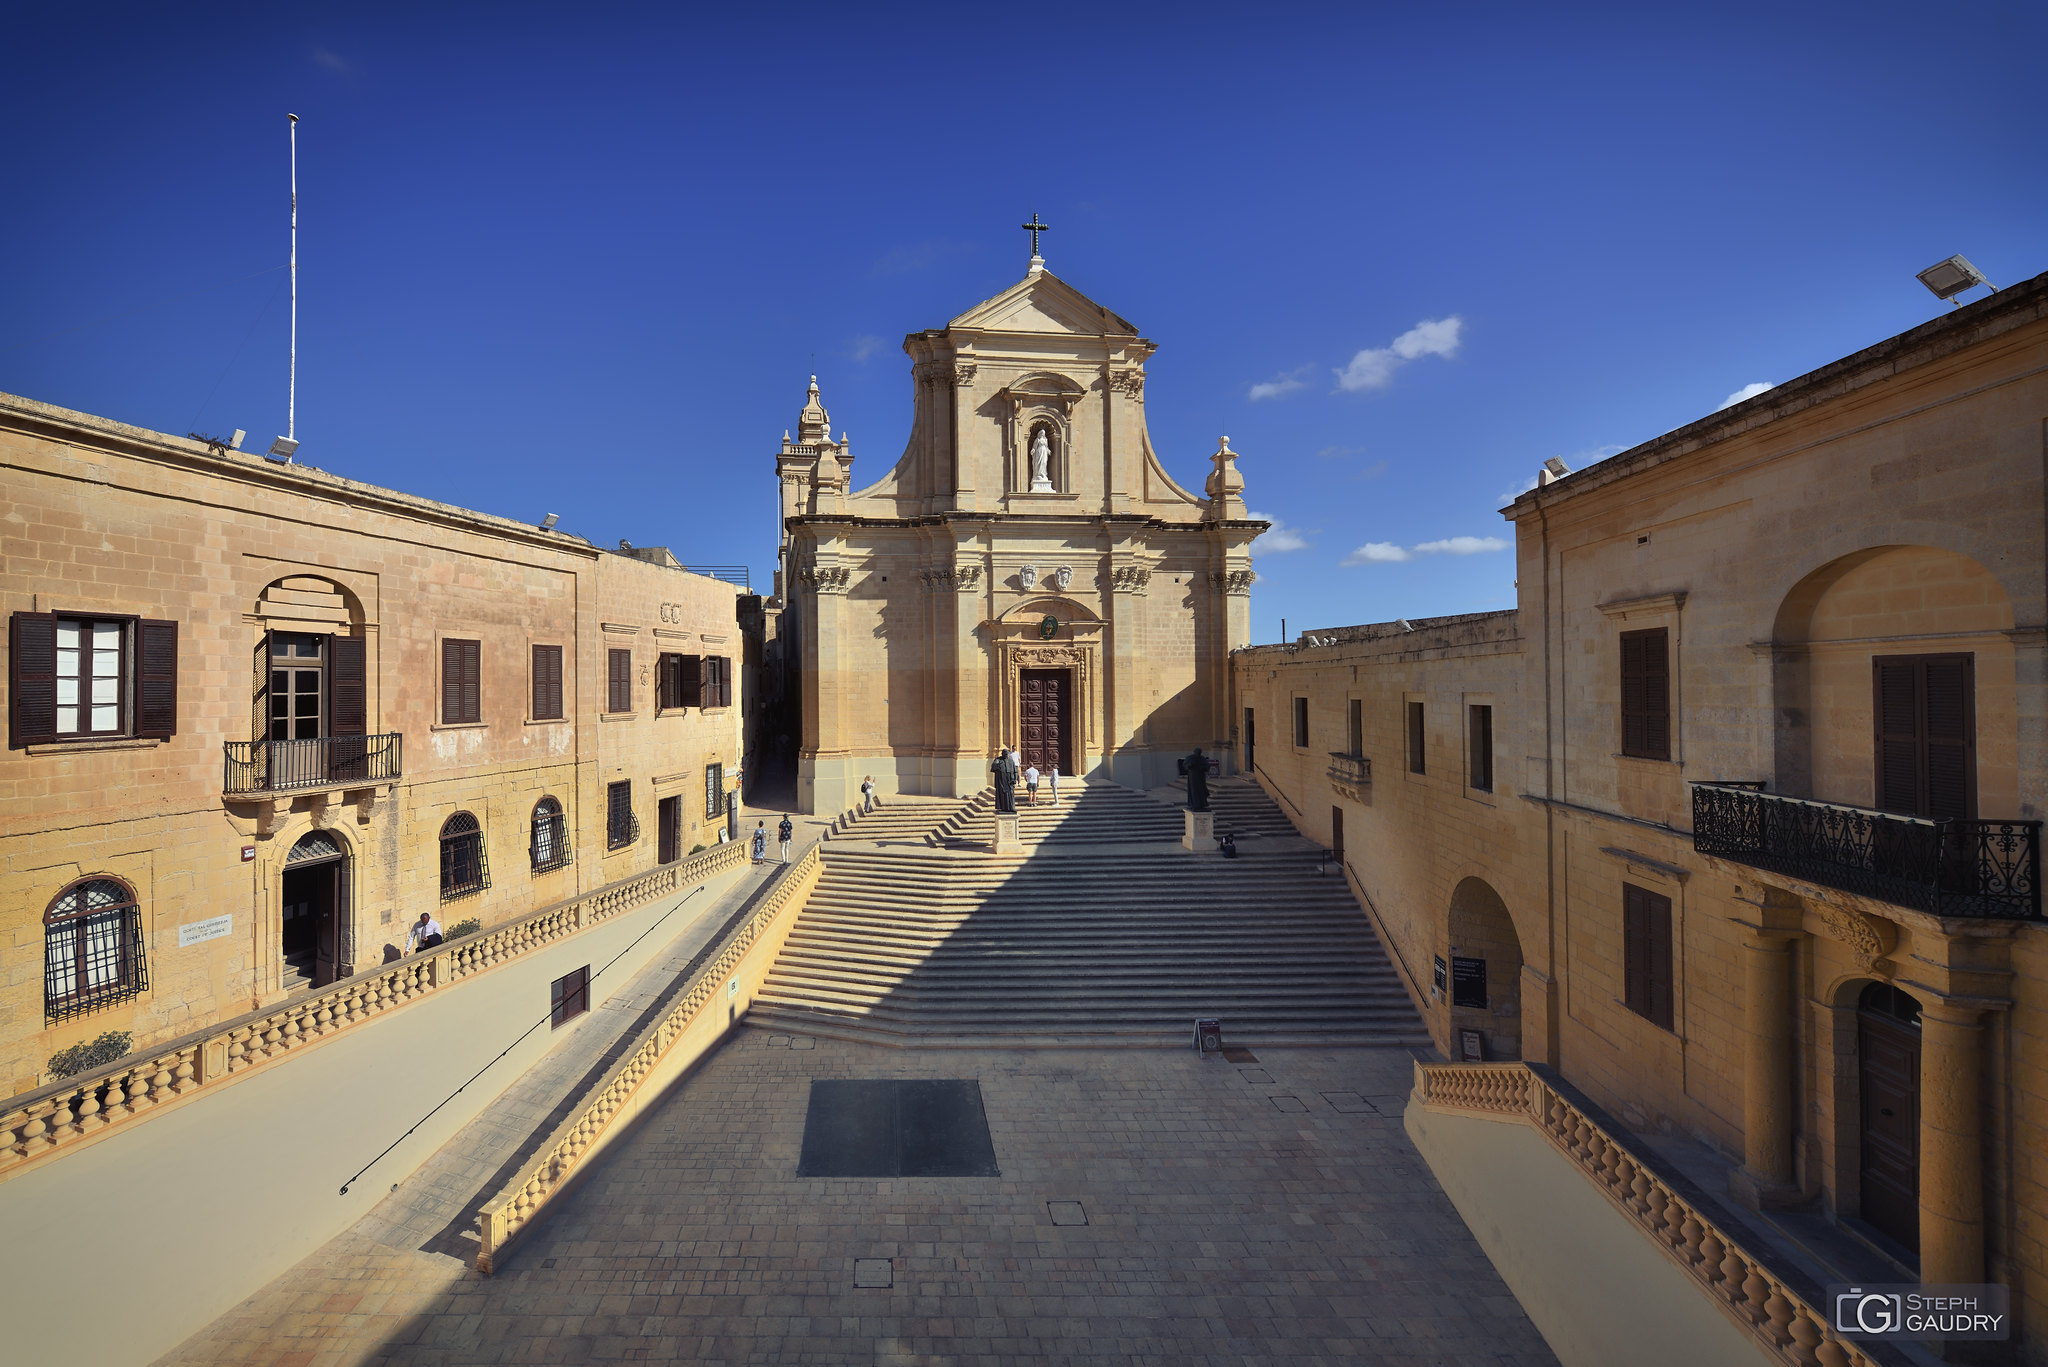 Cathédrale Notre-Dame-de-l'Assomption de Gozo [Klicken Sie hier, um die Diashow zu starten]